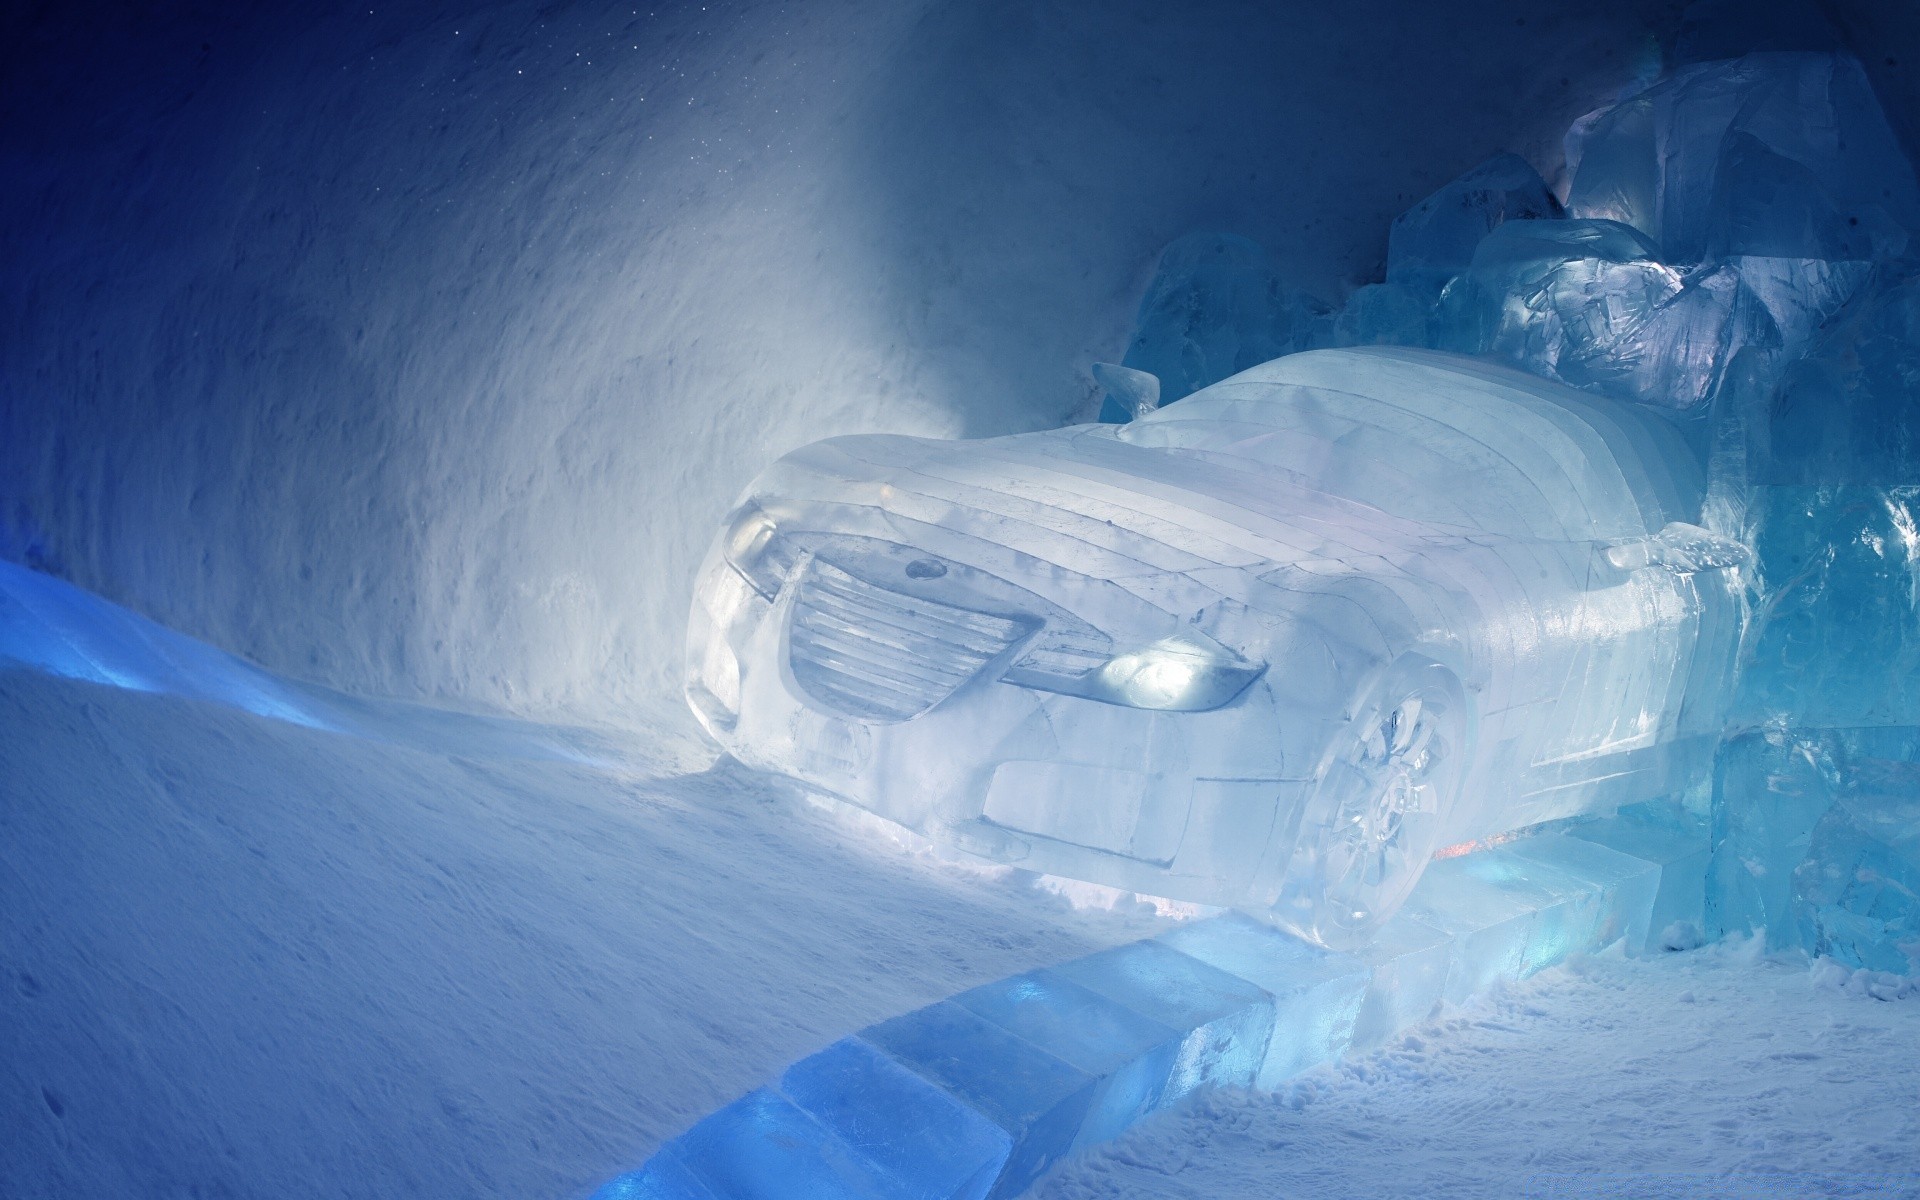 Важные нюансы выбора автомобиля для использования в условиях снегопада и льда